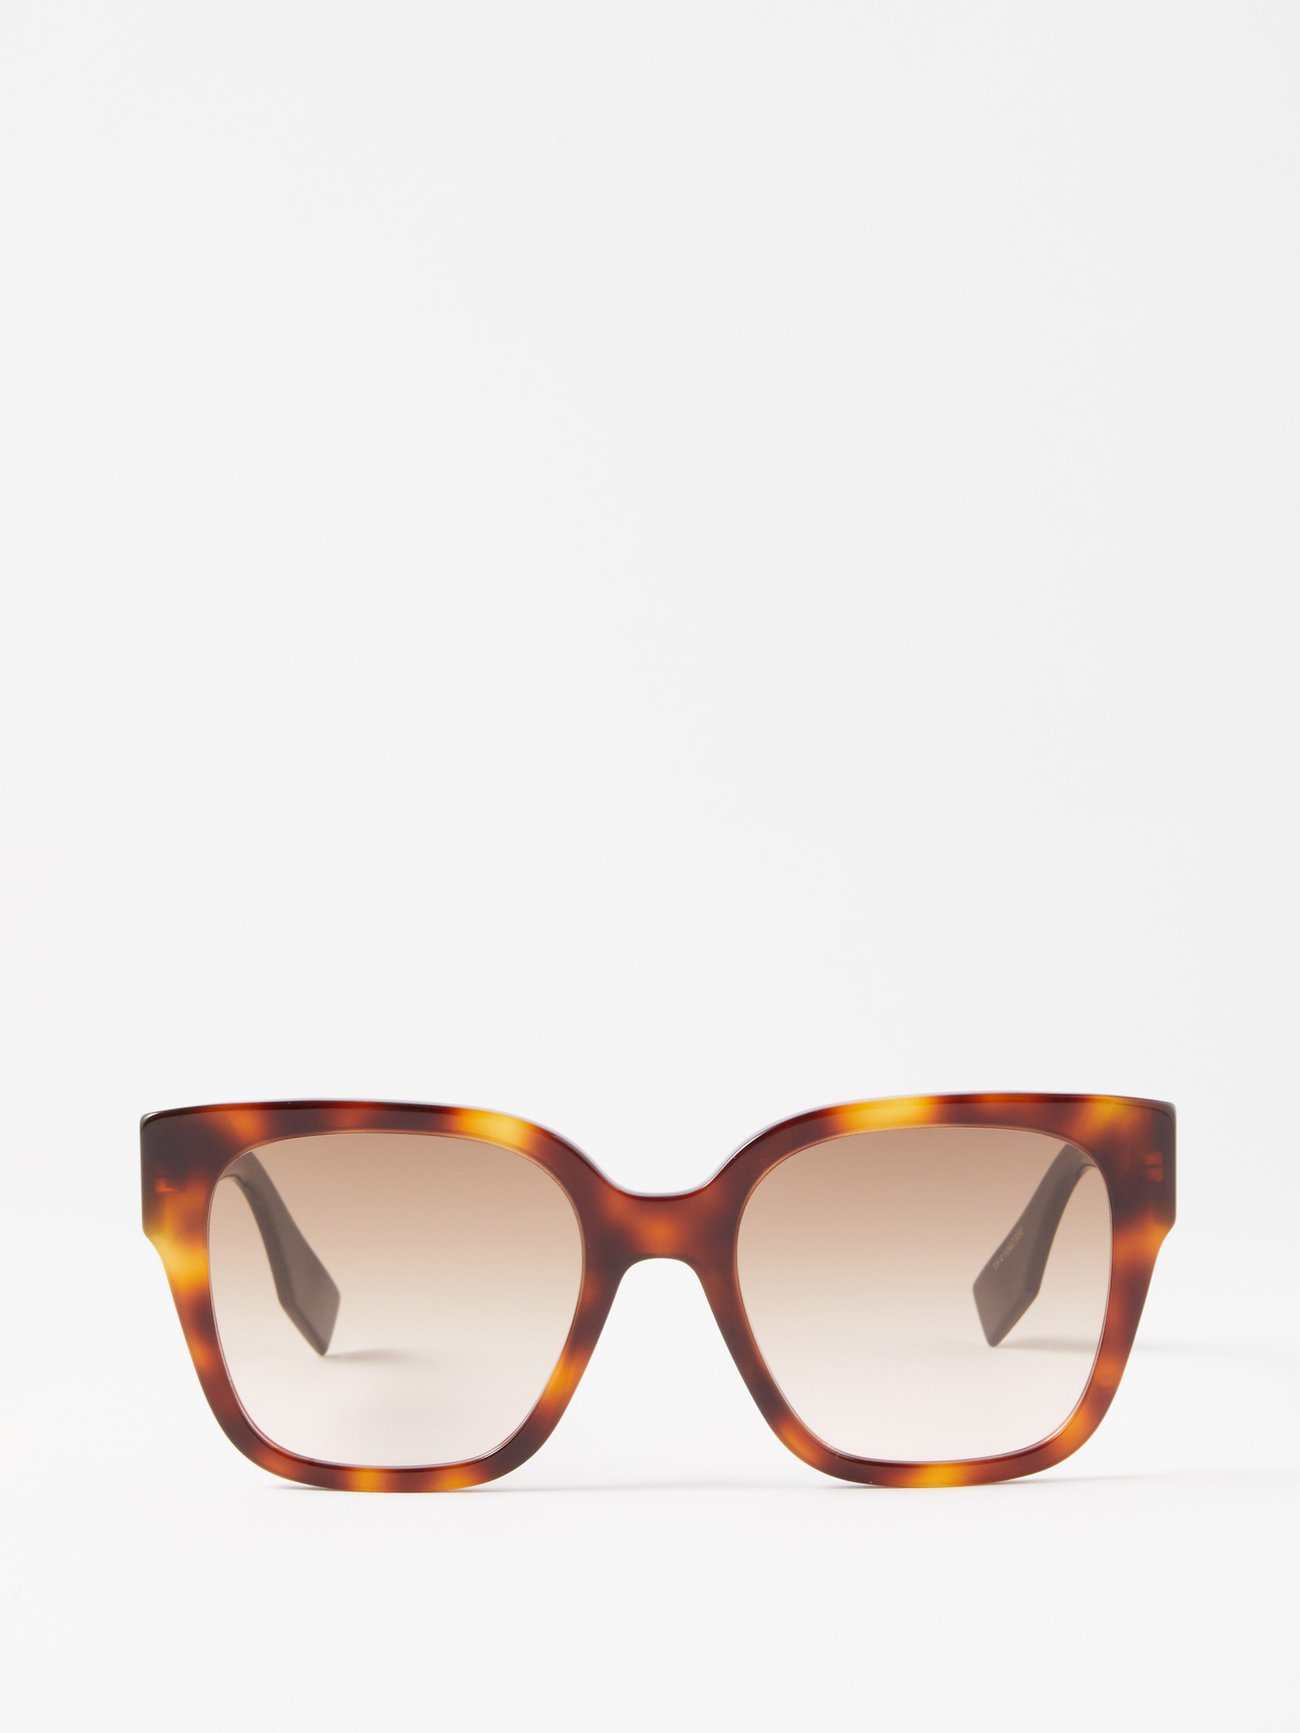 O'Lock - White acetate sunglasses